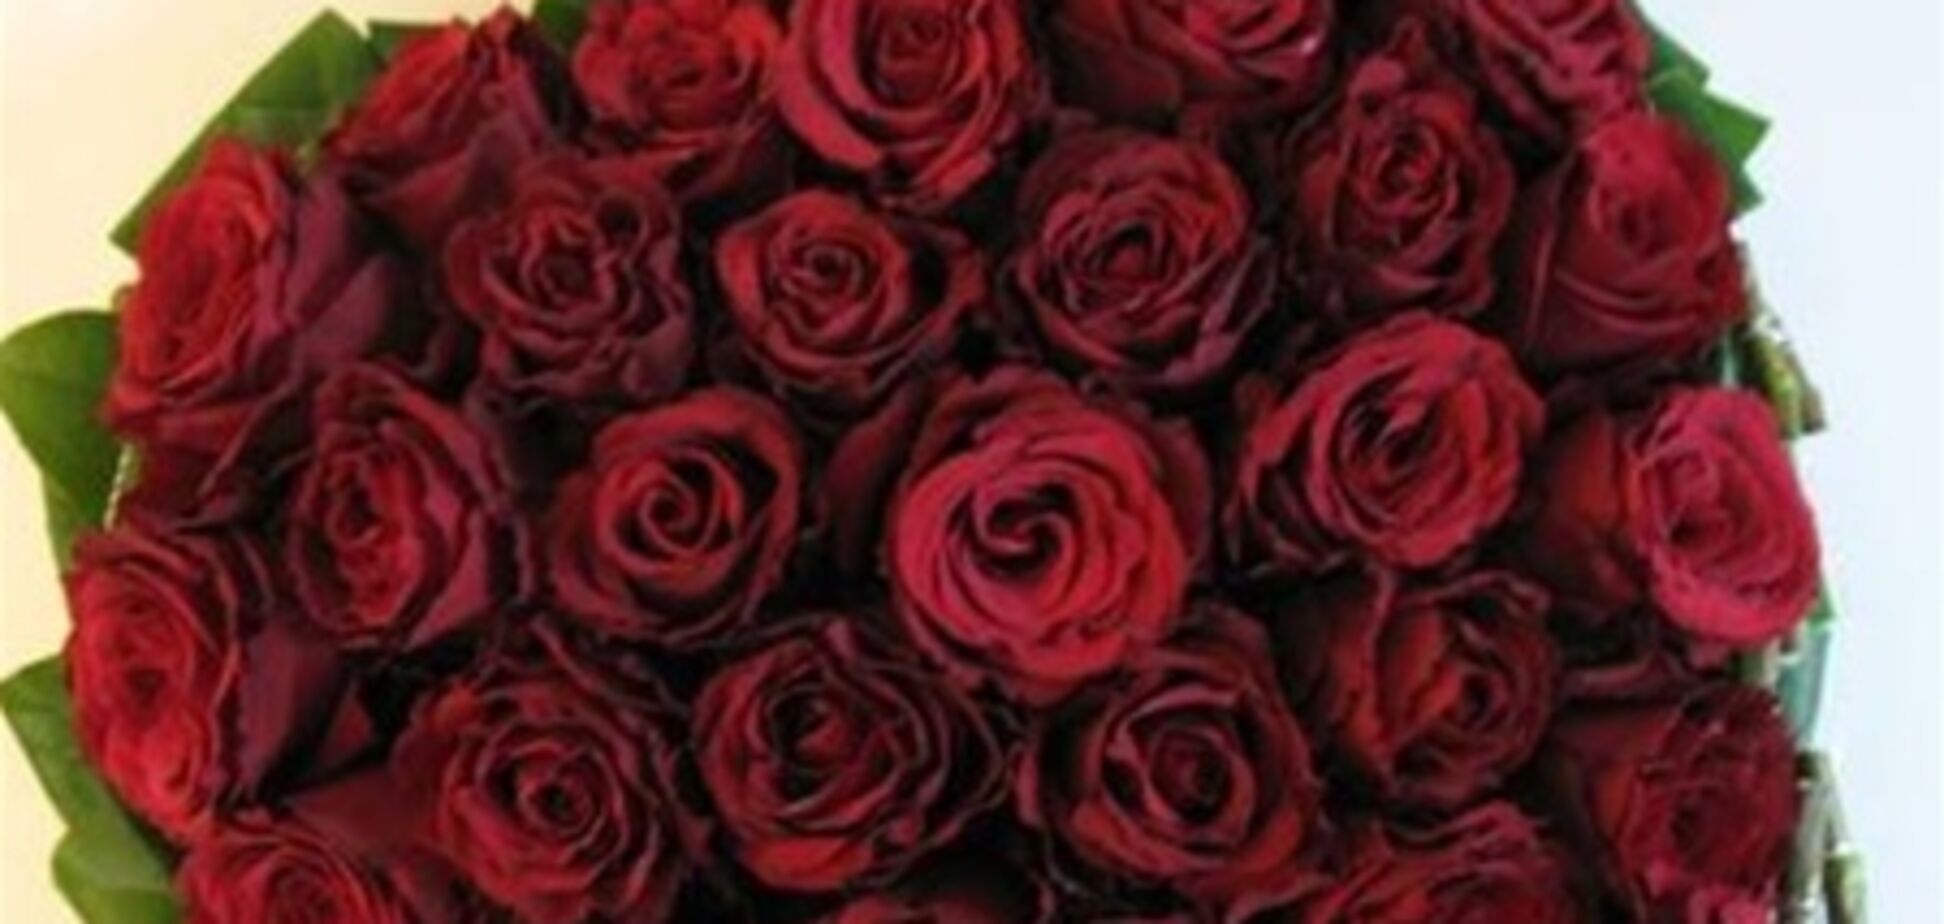 Тимошенко поздравят букетом красных роз в человеческий рост